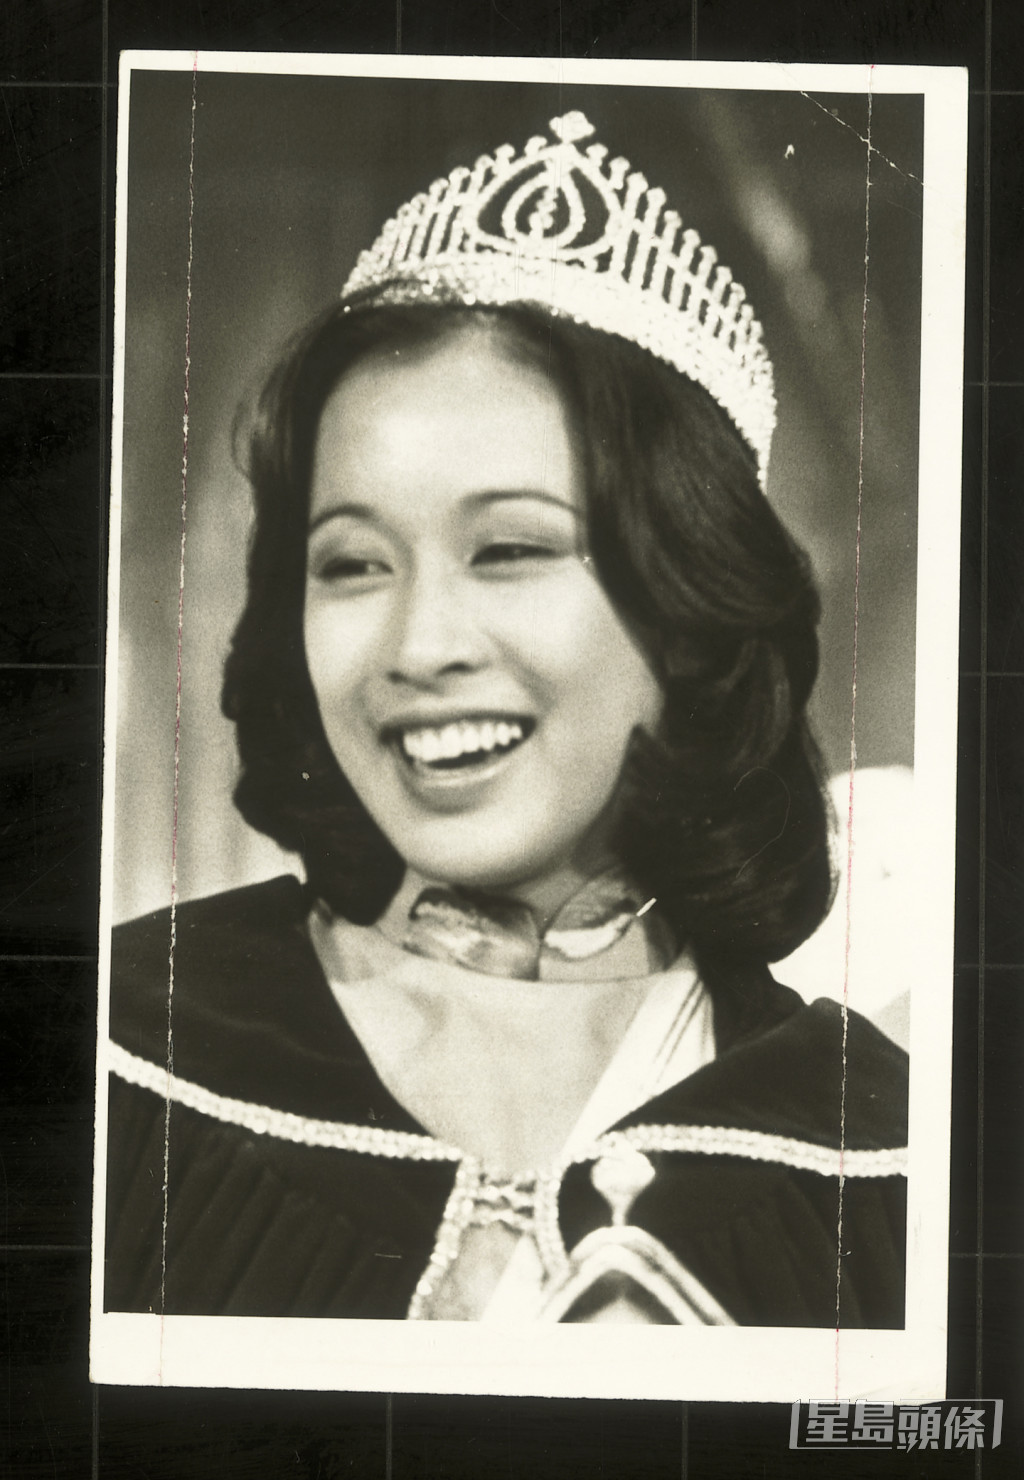 朱玲玲是1977年香港小姐冠军及最上镜小姐，是首位夺得两个奖项的参赛者。当选后只在娱乐圈发展了很短时间，在无线电视拍过一部电视剧《玛丽关77》，客串过电视剧《狂潮》。